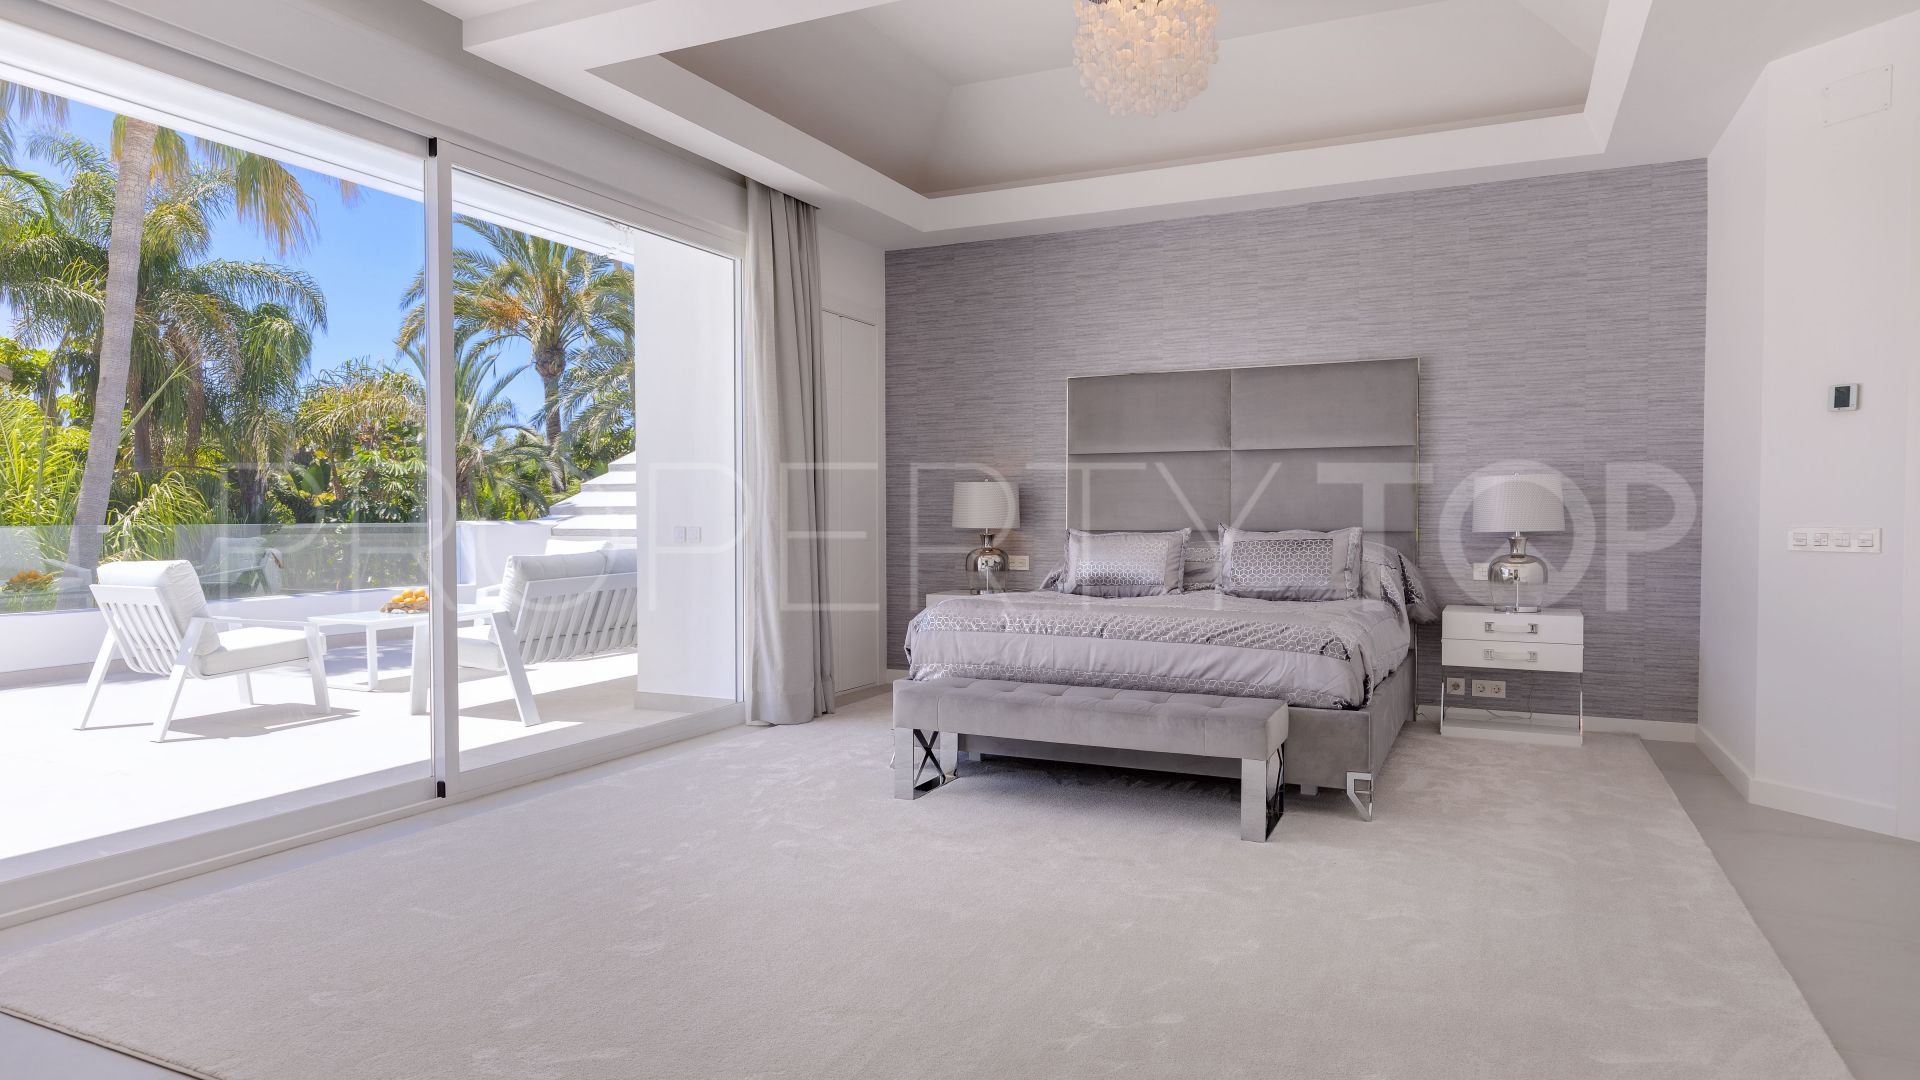 6 bedrooms villa for sale in Guadalmina Baja